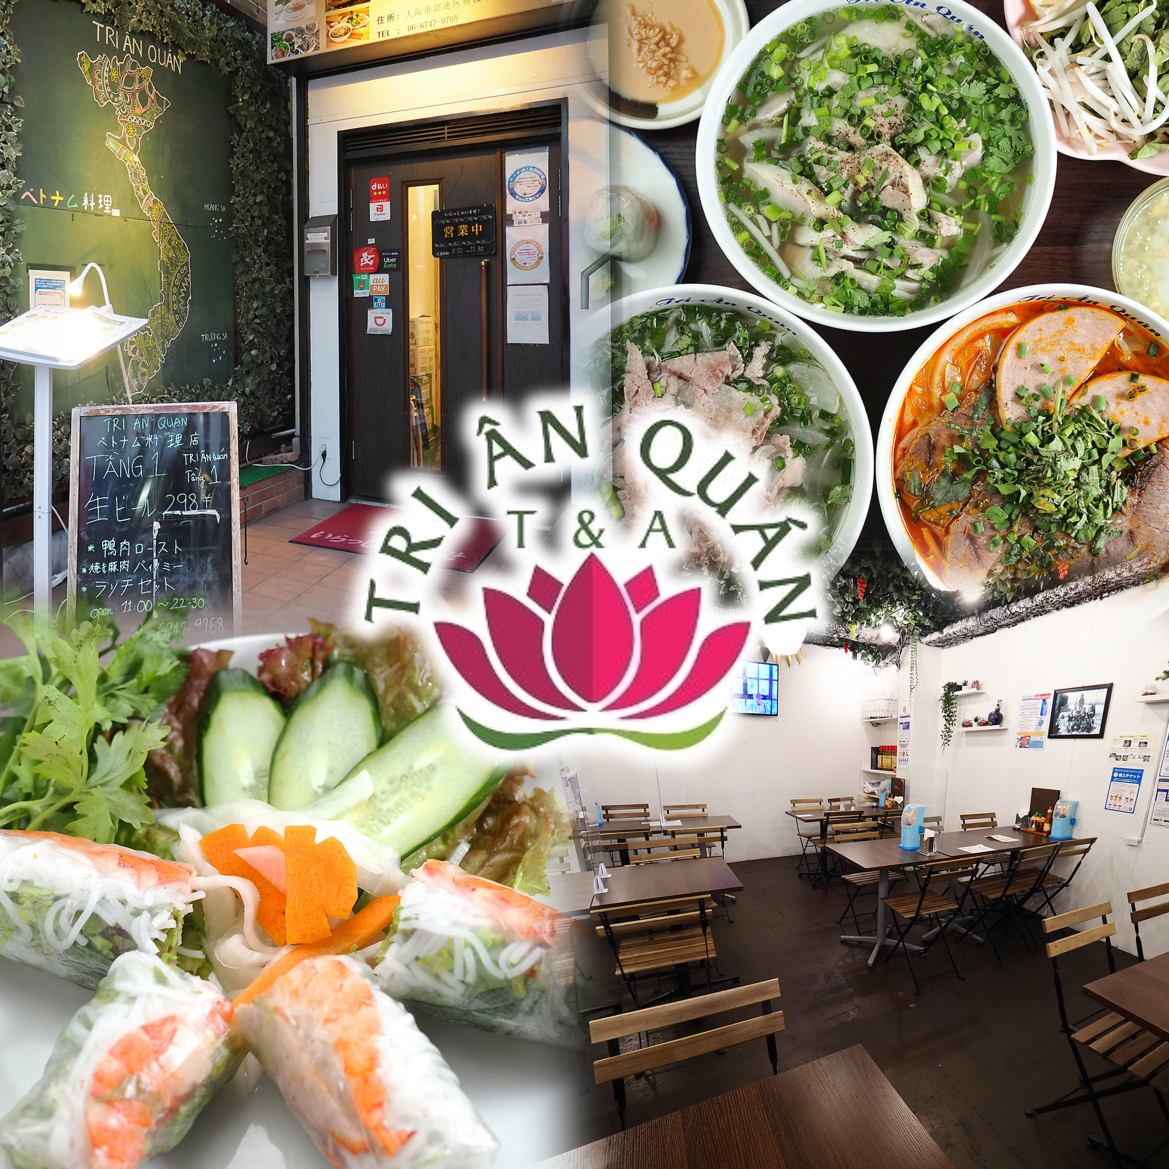 您可以享用各種健康的正宗越南菜。非常適合宴會和女士聚會。